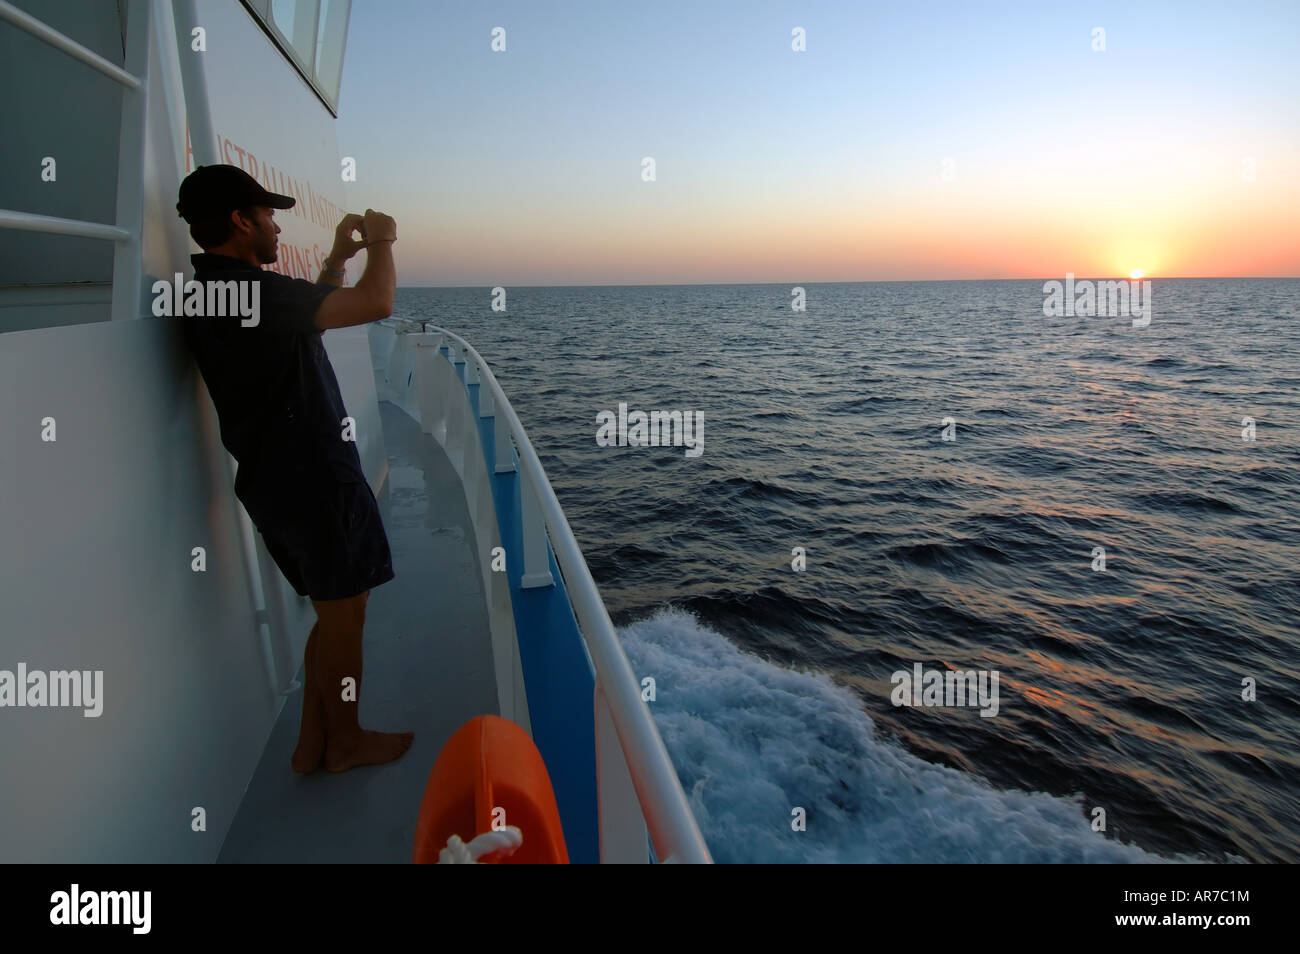 L'aube sur l'océan Indien depuis le pont d'un navire de recherche marine de l'Australie Occidentale Solander RV Banque D'Images